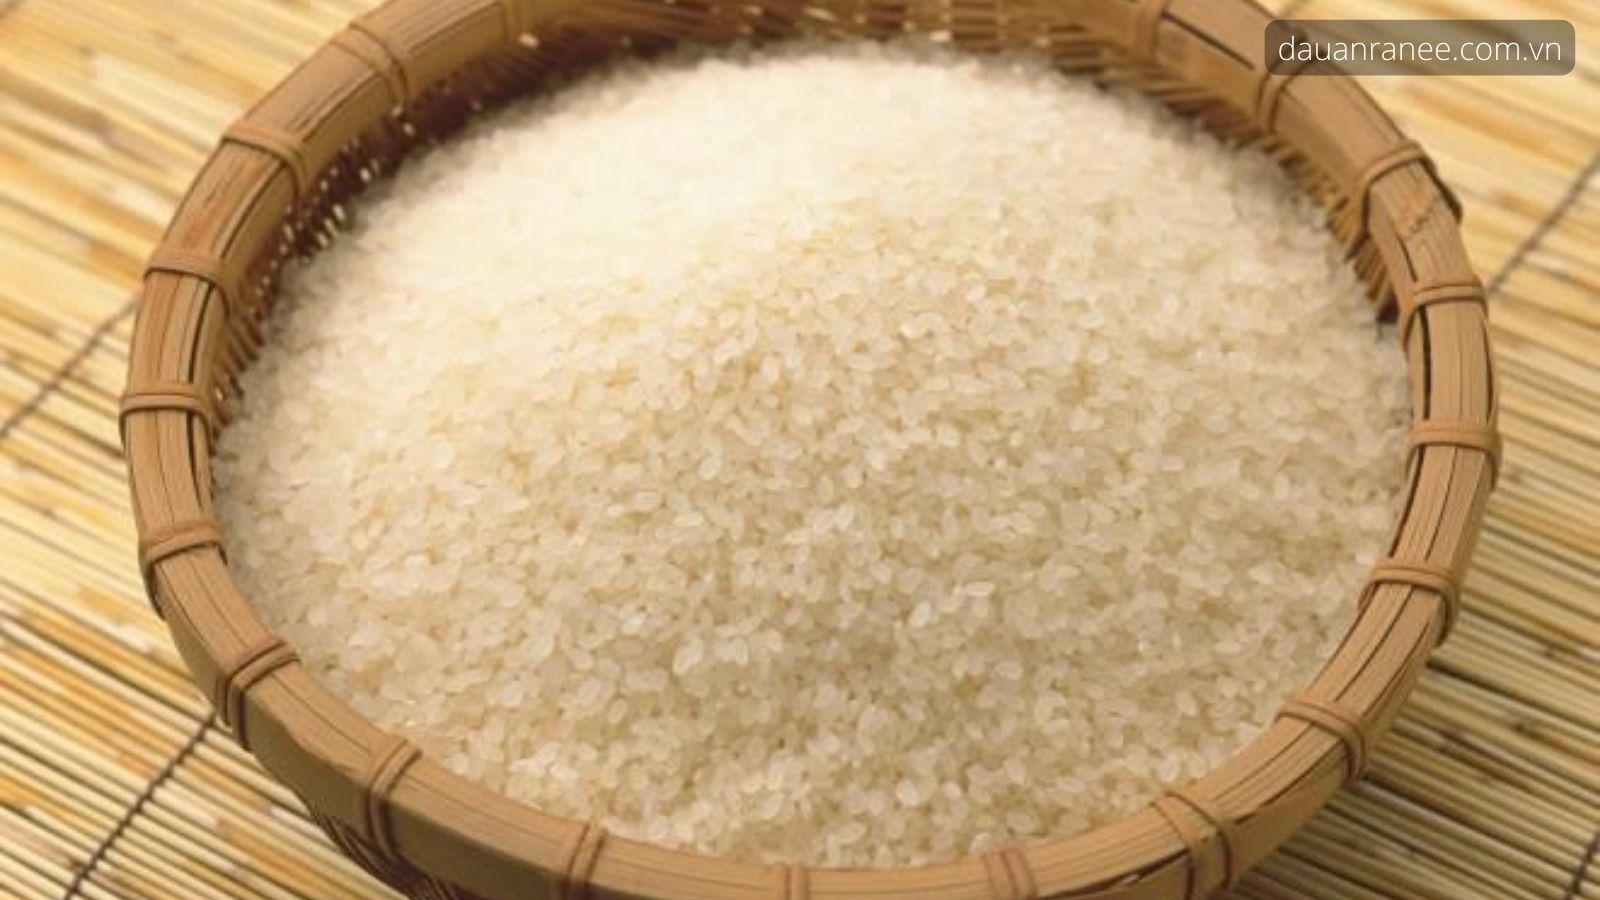 Đặc sản Nam Định – Gạo tám thơm